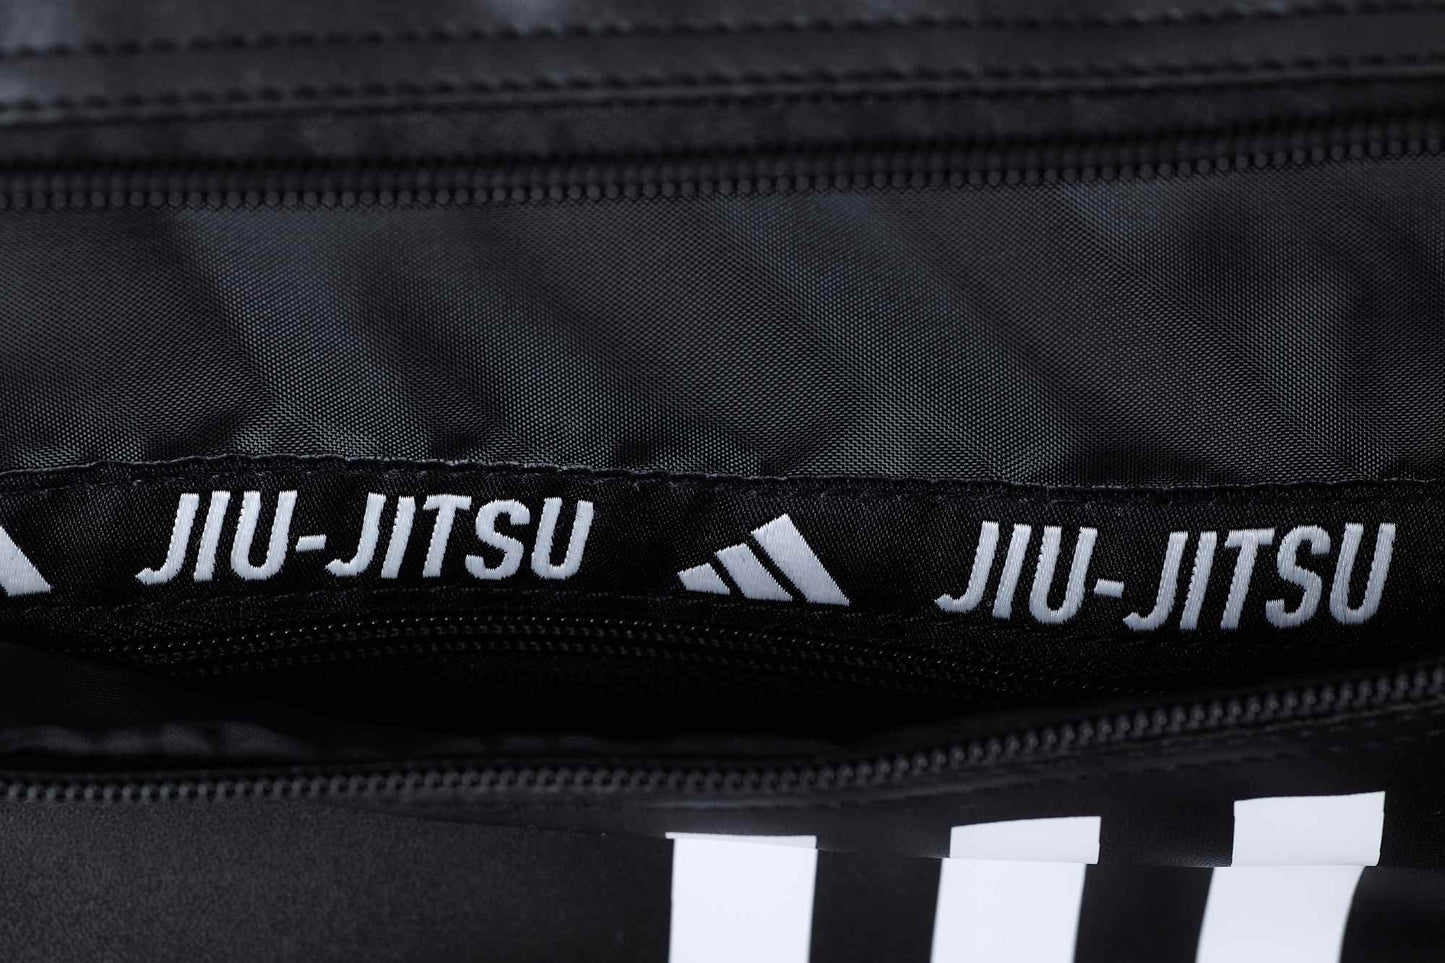 adidas 2in1 Sac Jiu-Jitsu noir/blanc PU, adiACC051BJJ 